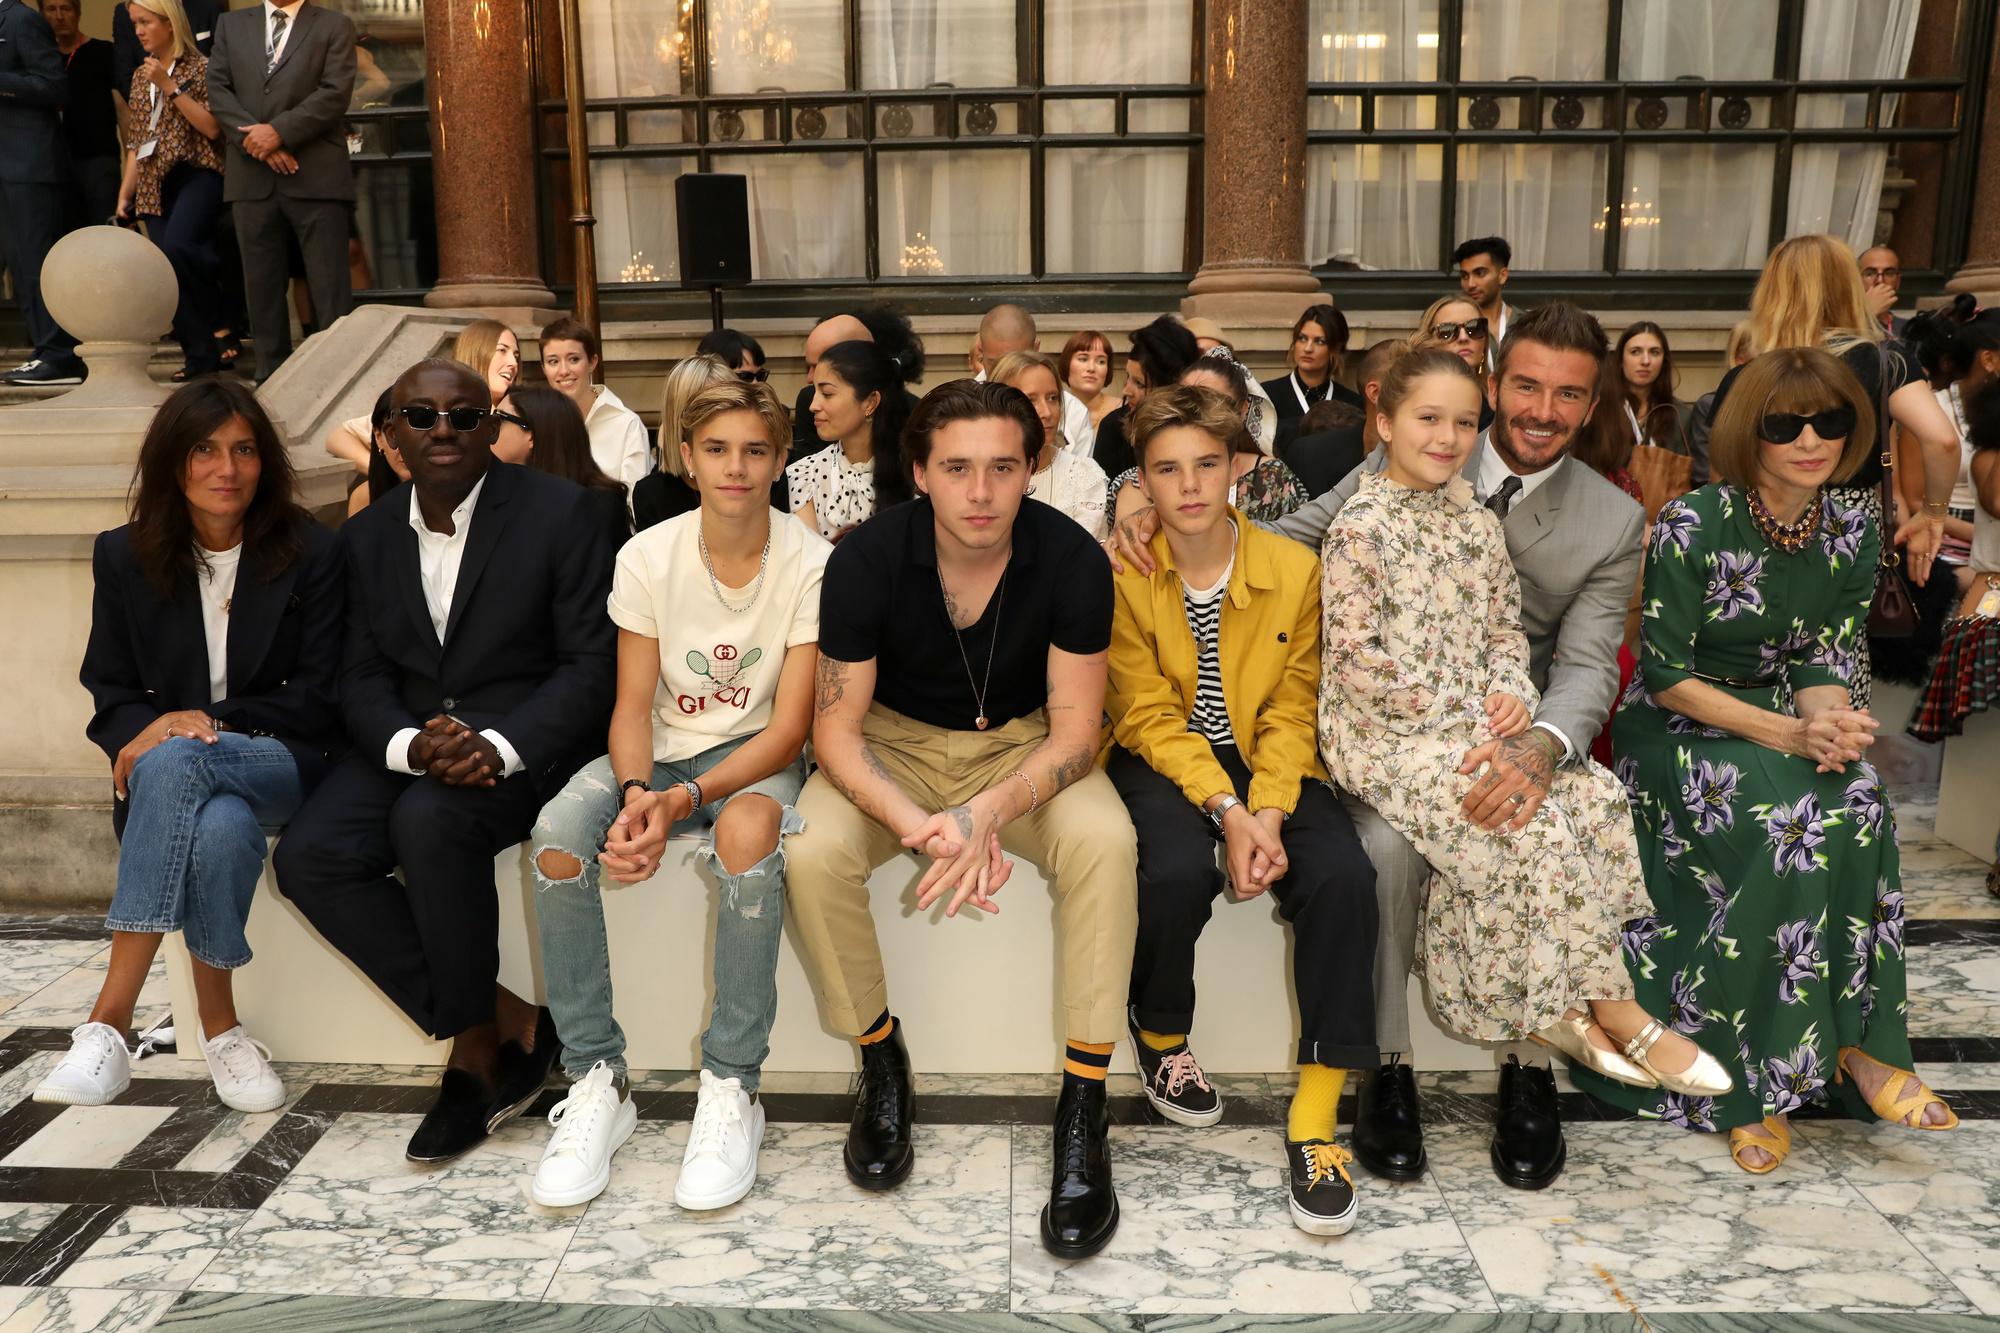 Romeo Beckham, Brooklyn Beckham, Cruz Beckham, Harper Beckham, David Beckham en Anna Wintour tijdens de show van Victoria Beckham tijdens de London Fashion Week.